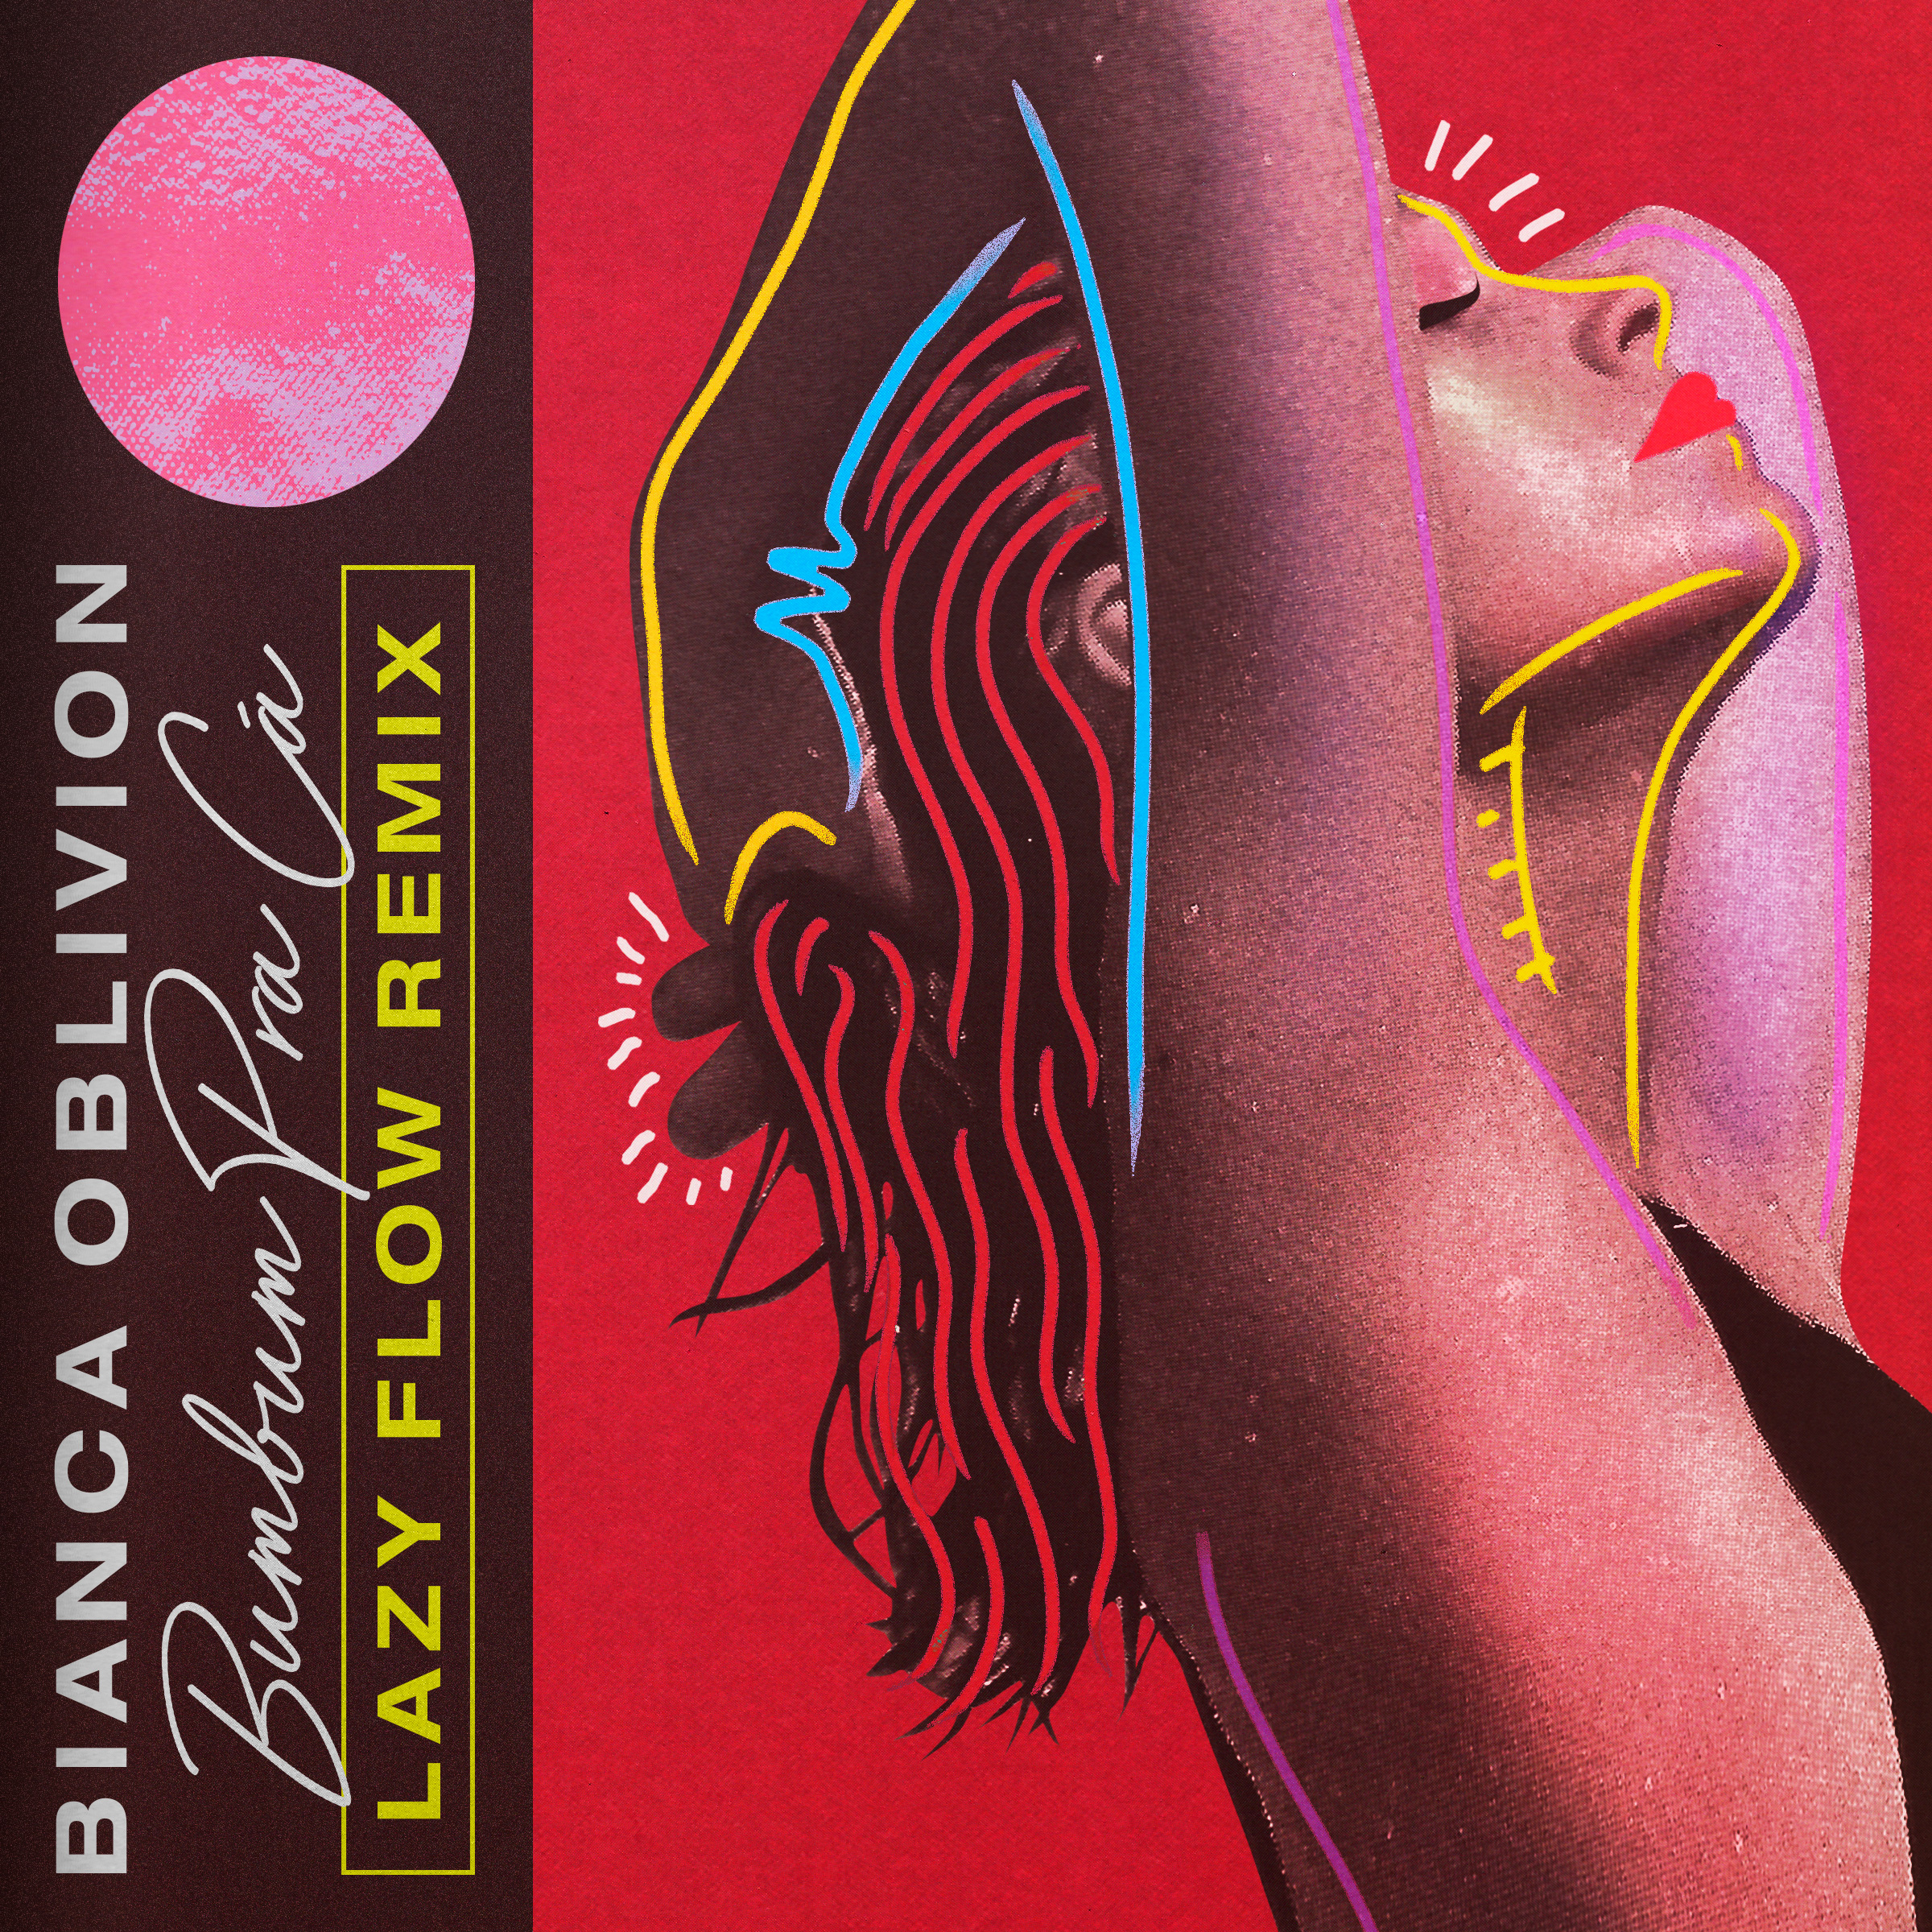 Pobierać [PREMIERE] Bianca Oblivion - Bumbum Pra Cá (Lazy Flow remix)